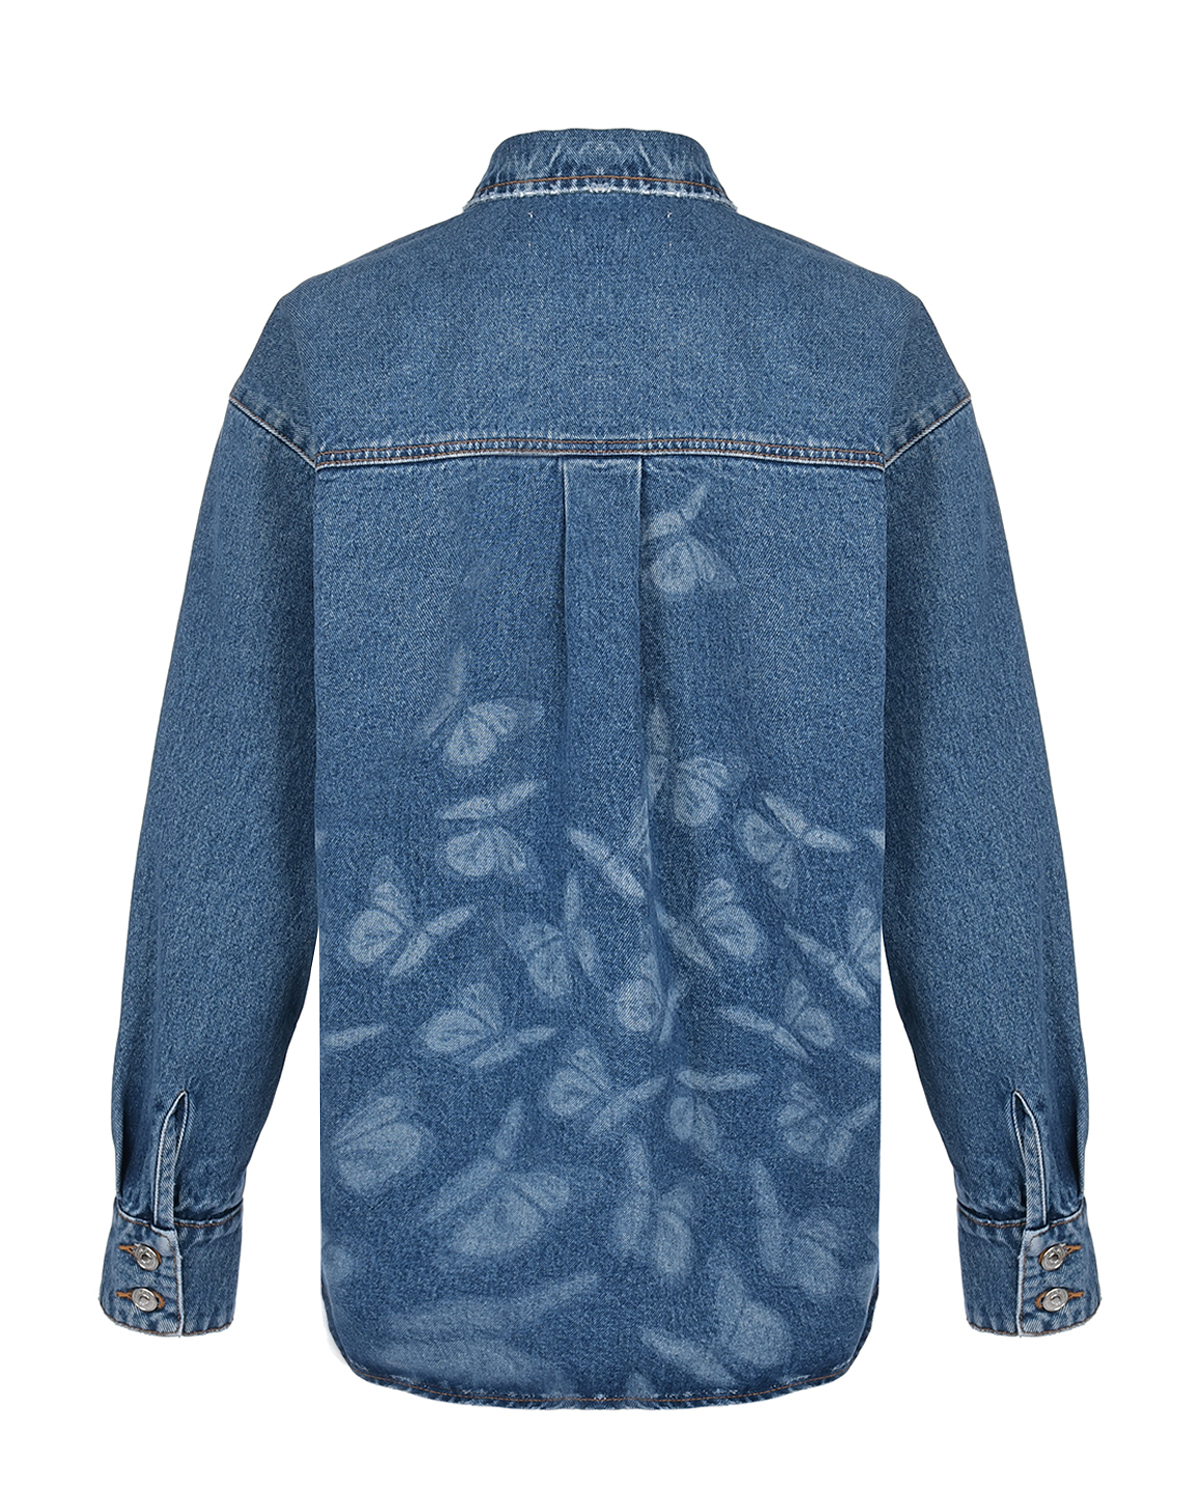 Синяя джинсовая рубашка с принтом "бабочки" MSGM, размер 40, цвет синий - фото 5